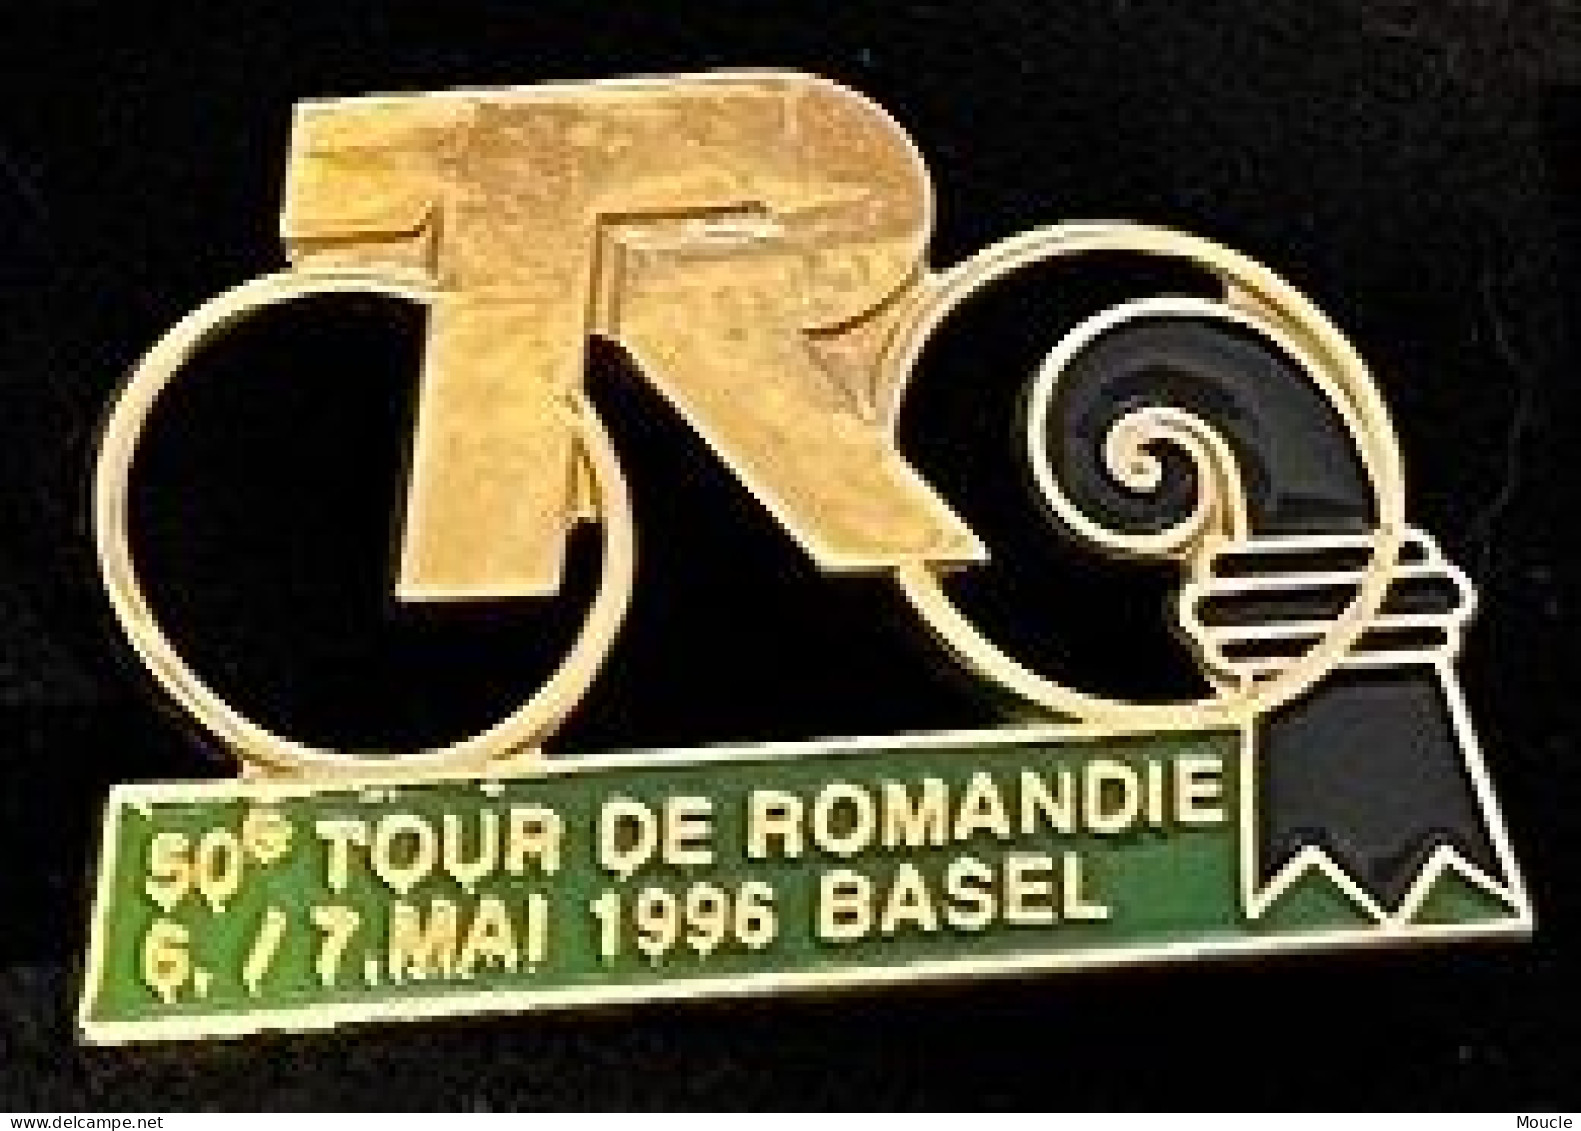 CYCLISME - VELO - BIKE - CYCLISTE - CYCLES - 50ème TOUR DE ROMANDIE 6-7 MAI 1996 - BALE - BASEL - SUISSE -SCHWEIZ-(33) - Wielrennen